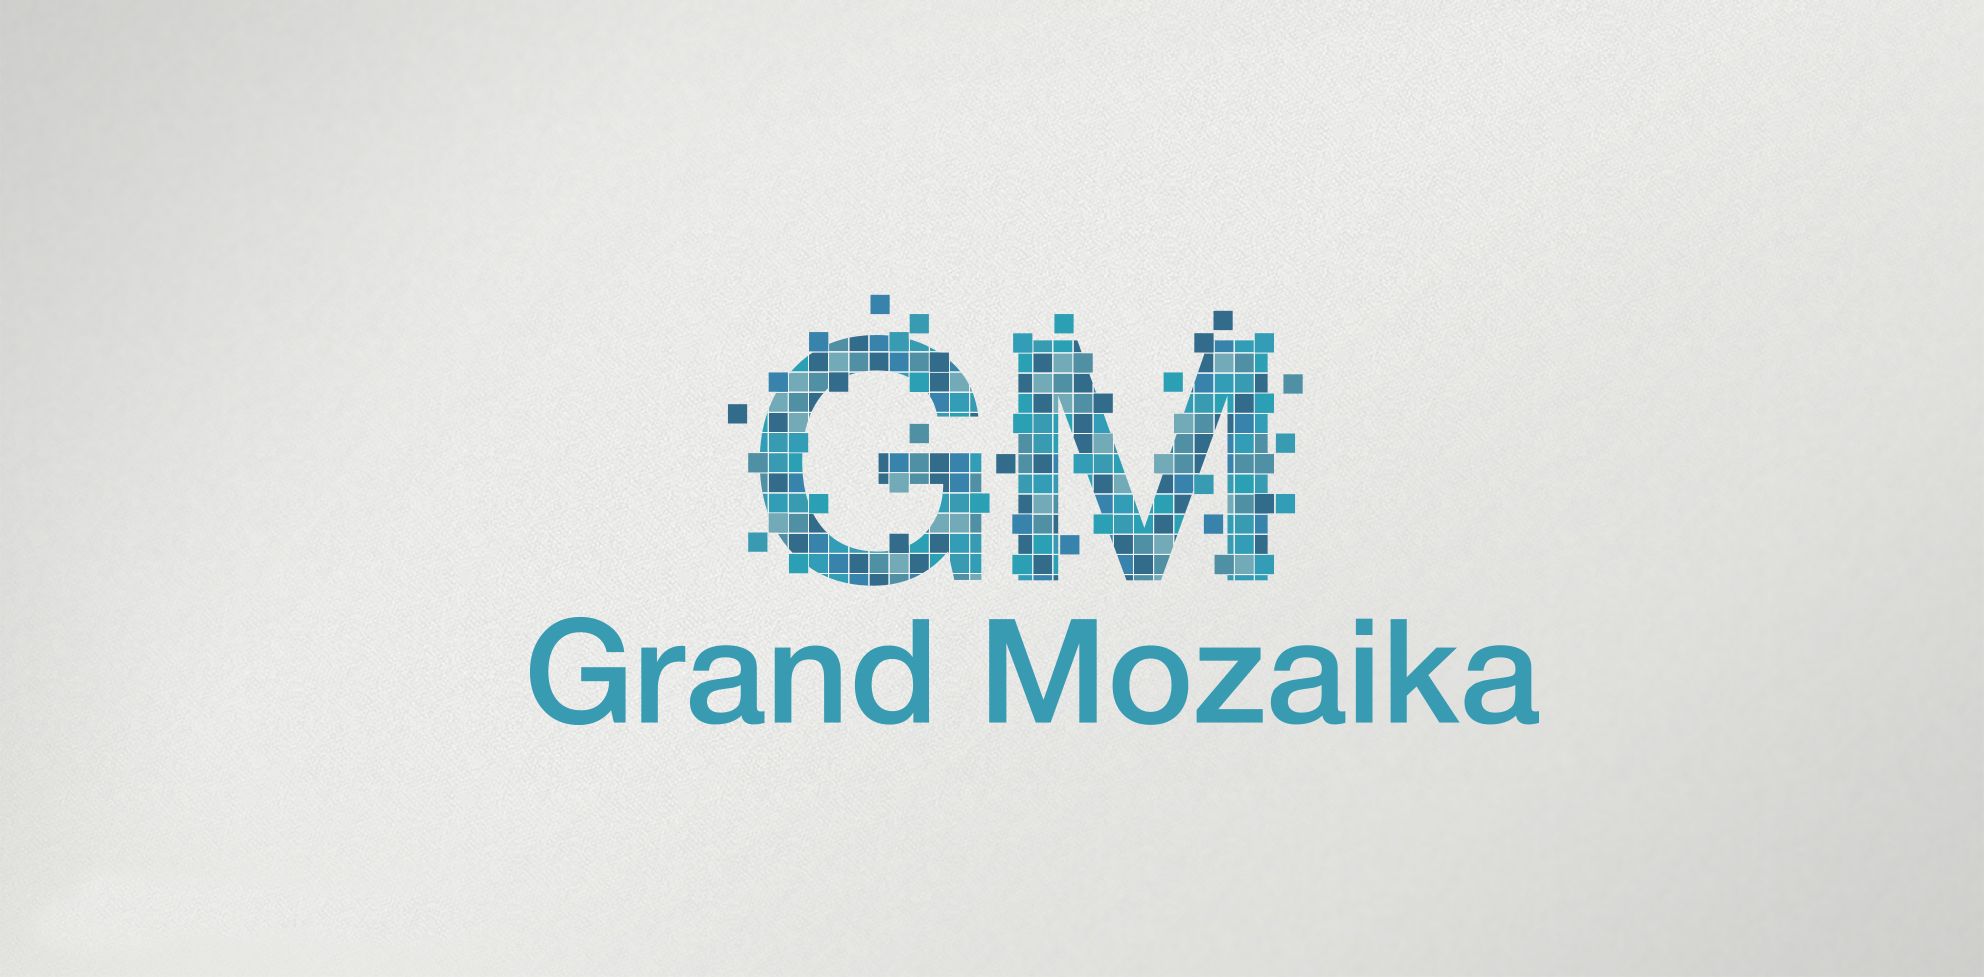 Лого и фирменный стиль для Гранд Мозаика или Grand Mozaika - дизайнер comicdm